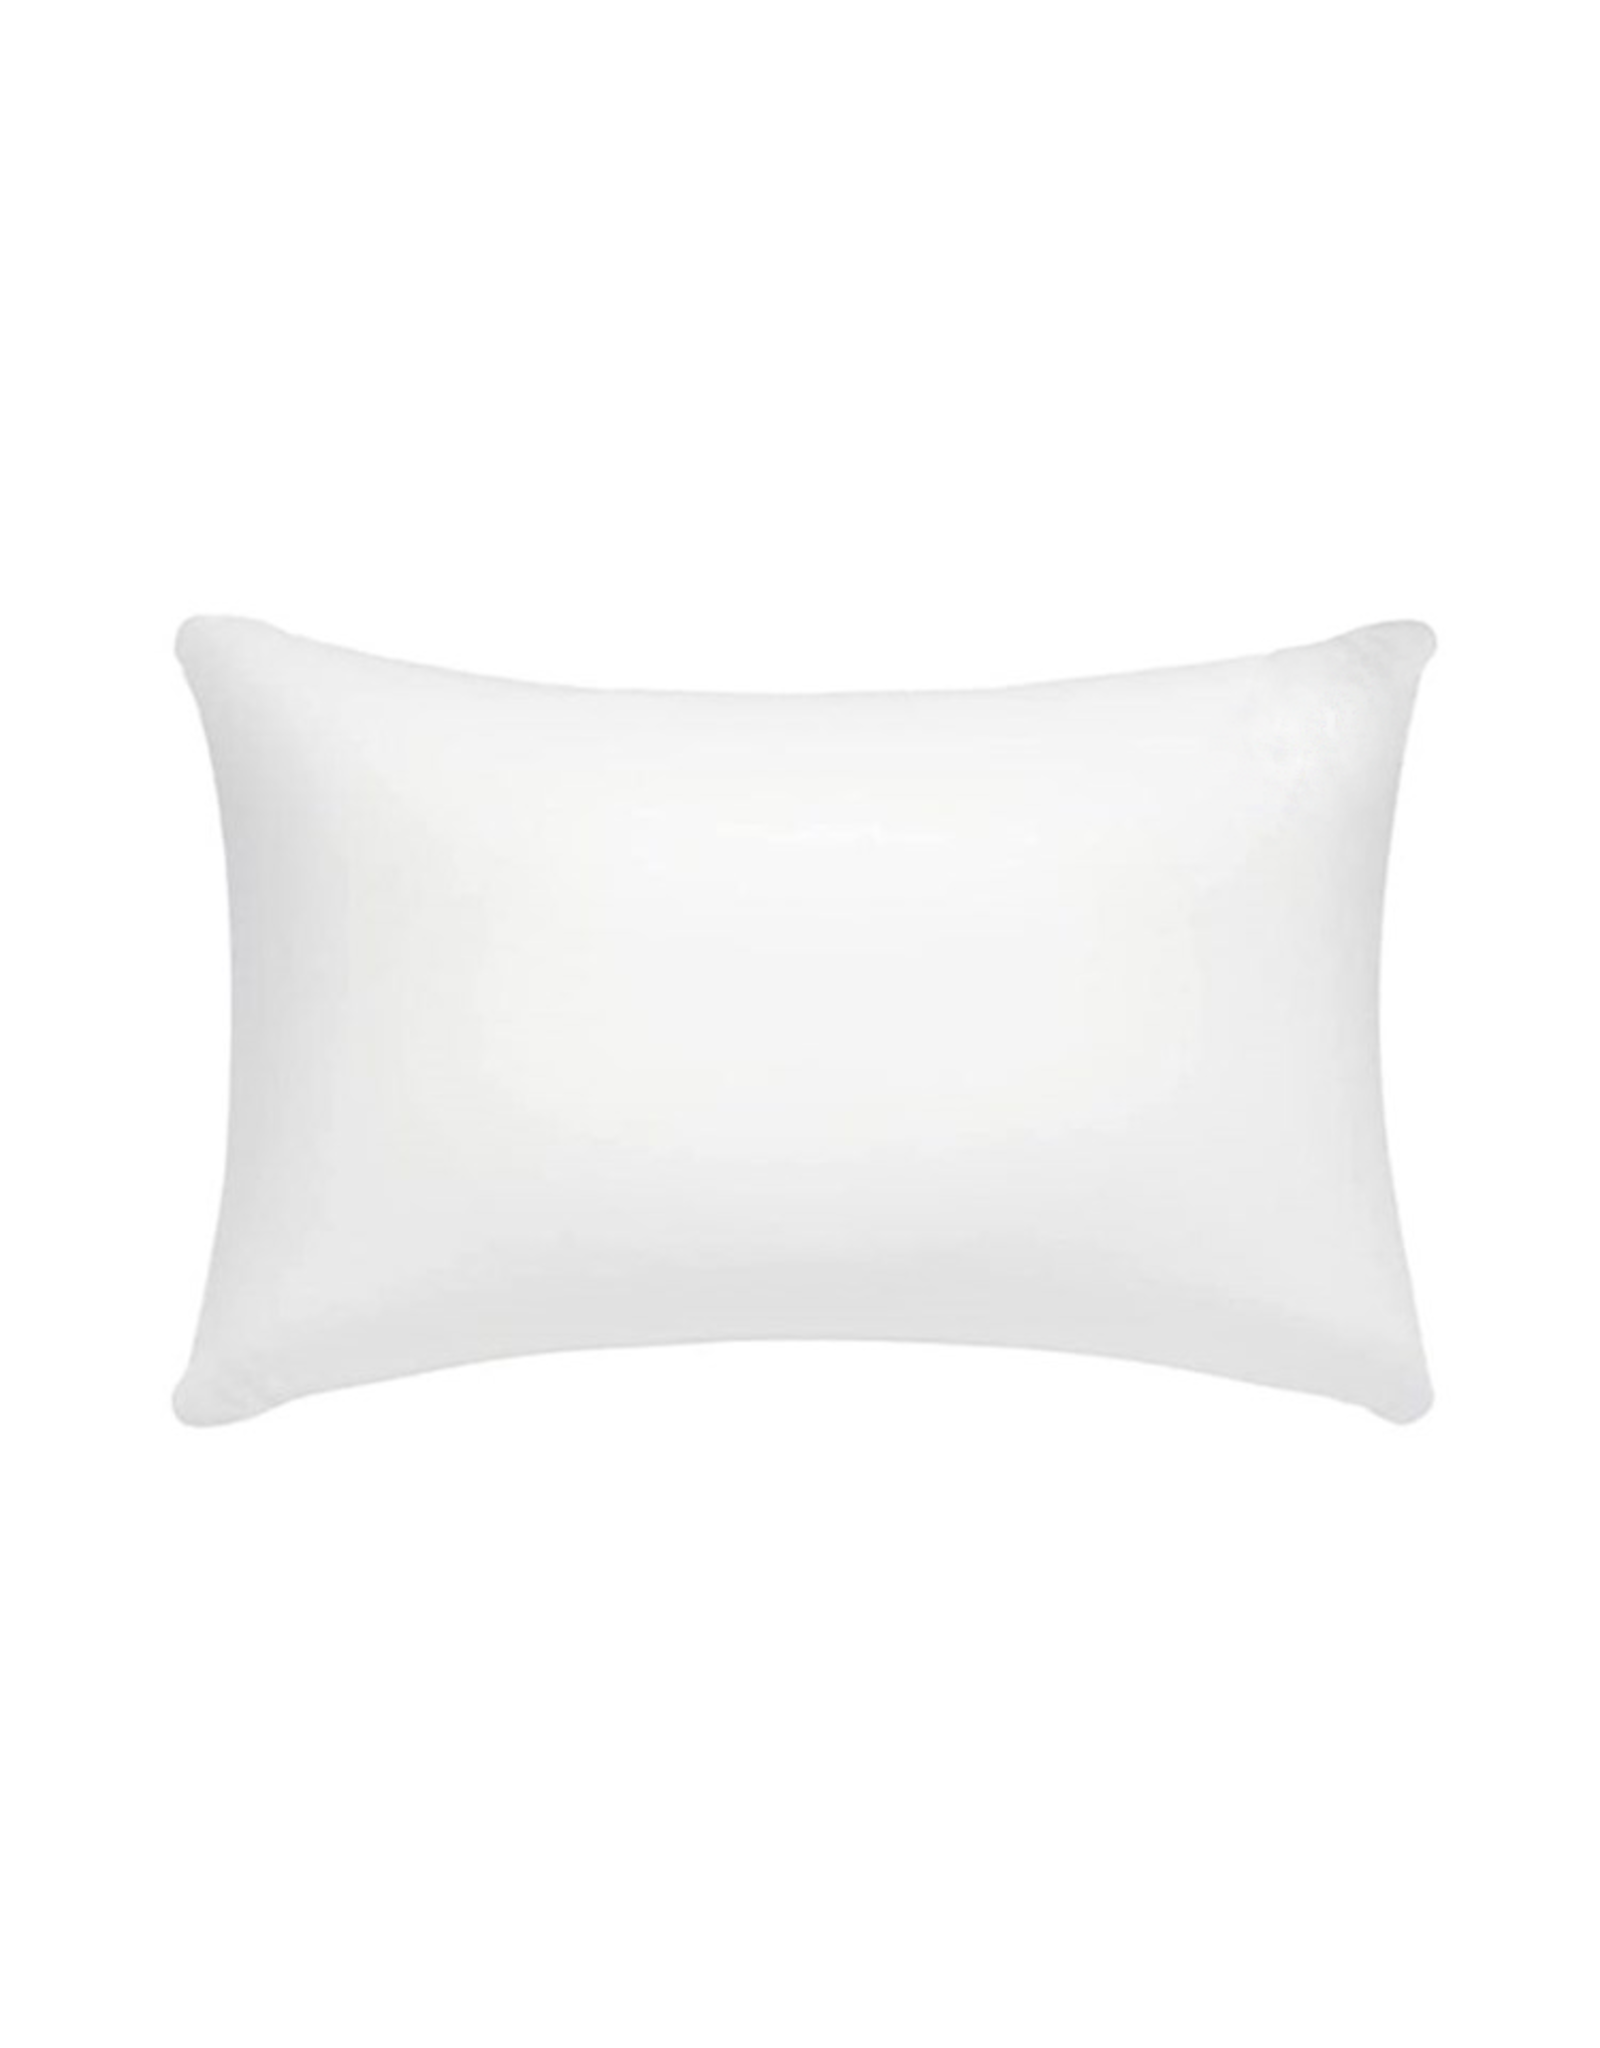 https://cdn.shoplightspeed.com/shops/633980/files/54462148/1600x2048x2/tide-hill-pillow-insert-12x16-inch-pillow-form.jpg